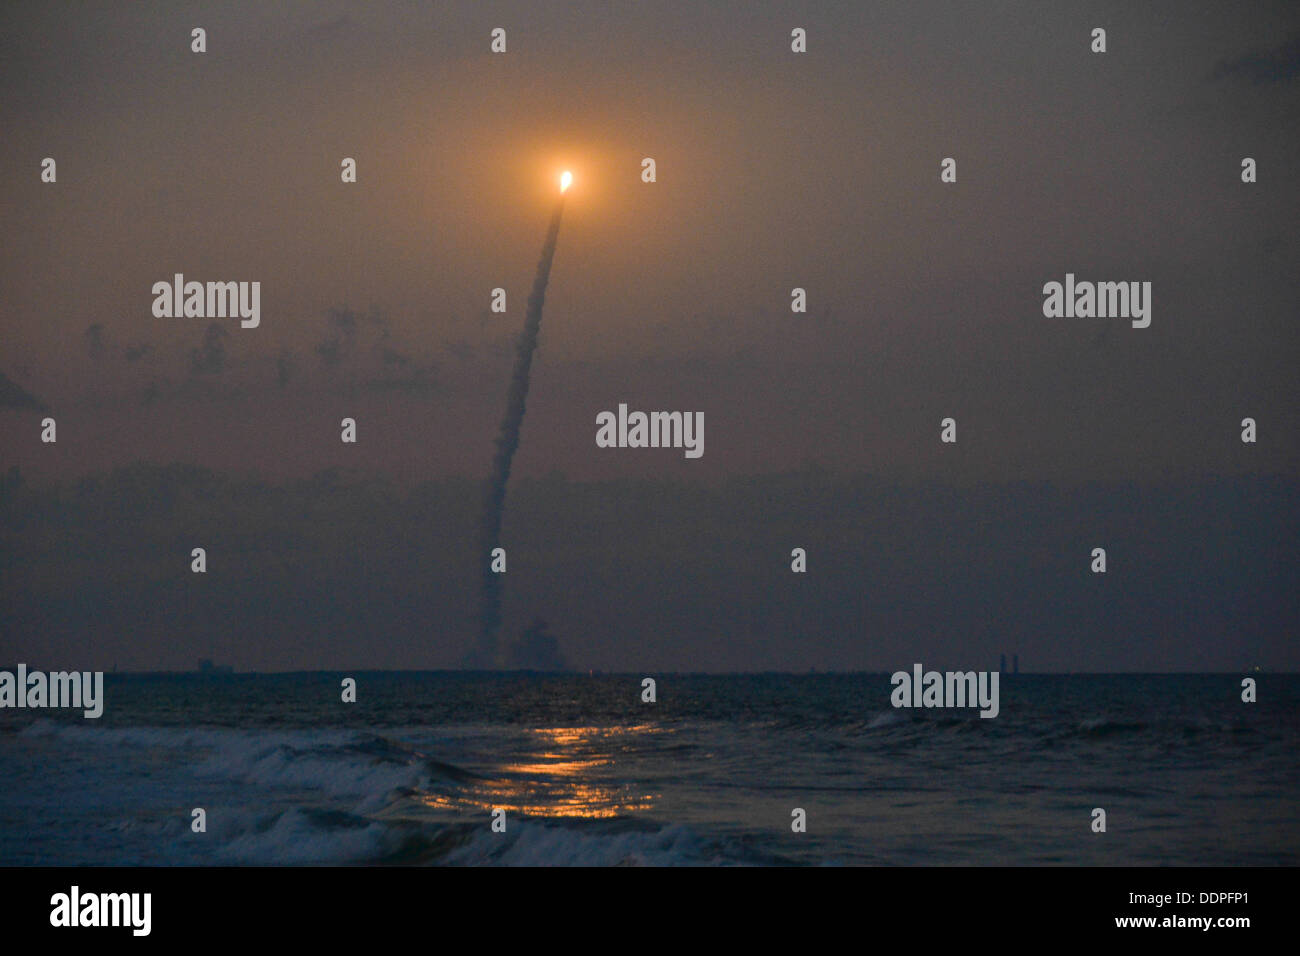 Lancement d'une fusée Delta IV au crépuscule, prises à partir de la plage de Cocoa Beach, Floride Banque D'Images